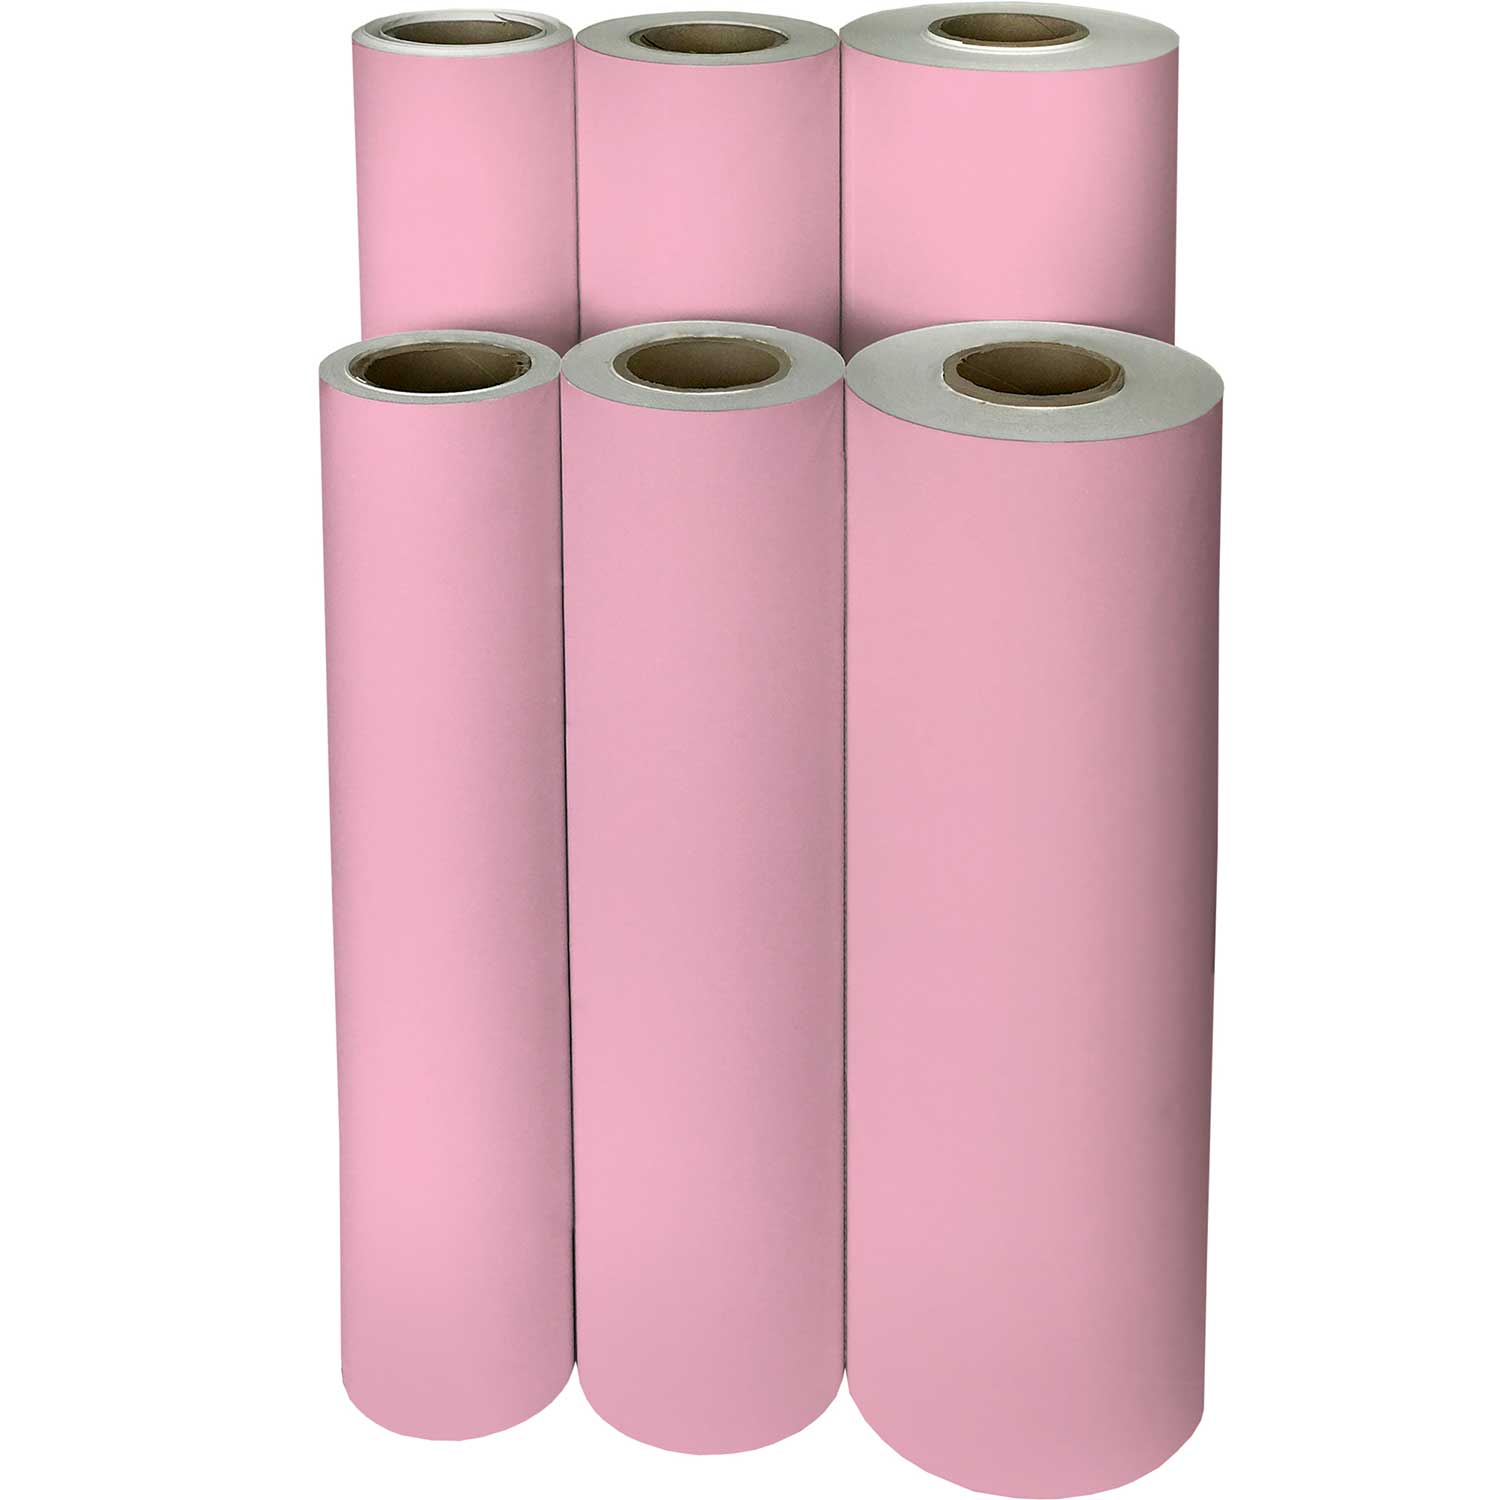 https://presentpaper.com/cdn/shop/products/B902Mf-Solid-Pastel-Pink-Gift-Wrapping-Paper-Reams_01e05218-6136-4ddc-bd9b-b956d02e32da.jpg?v=1683767539